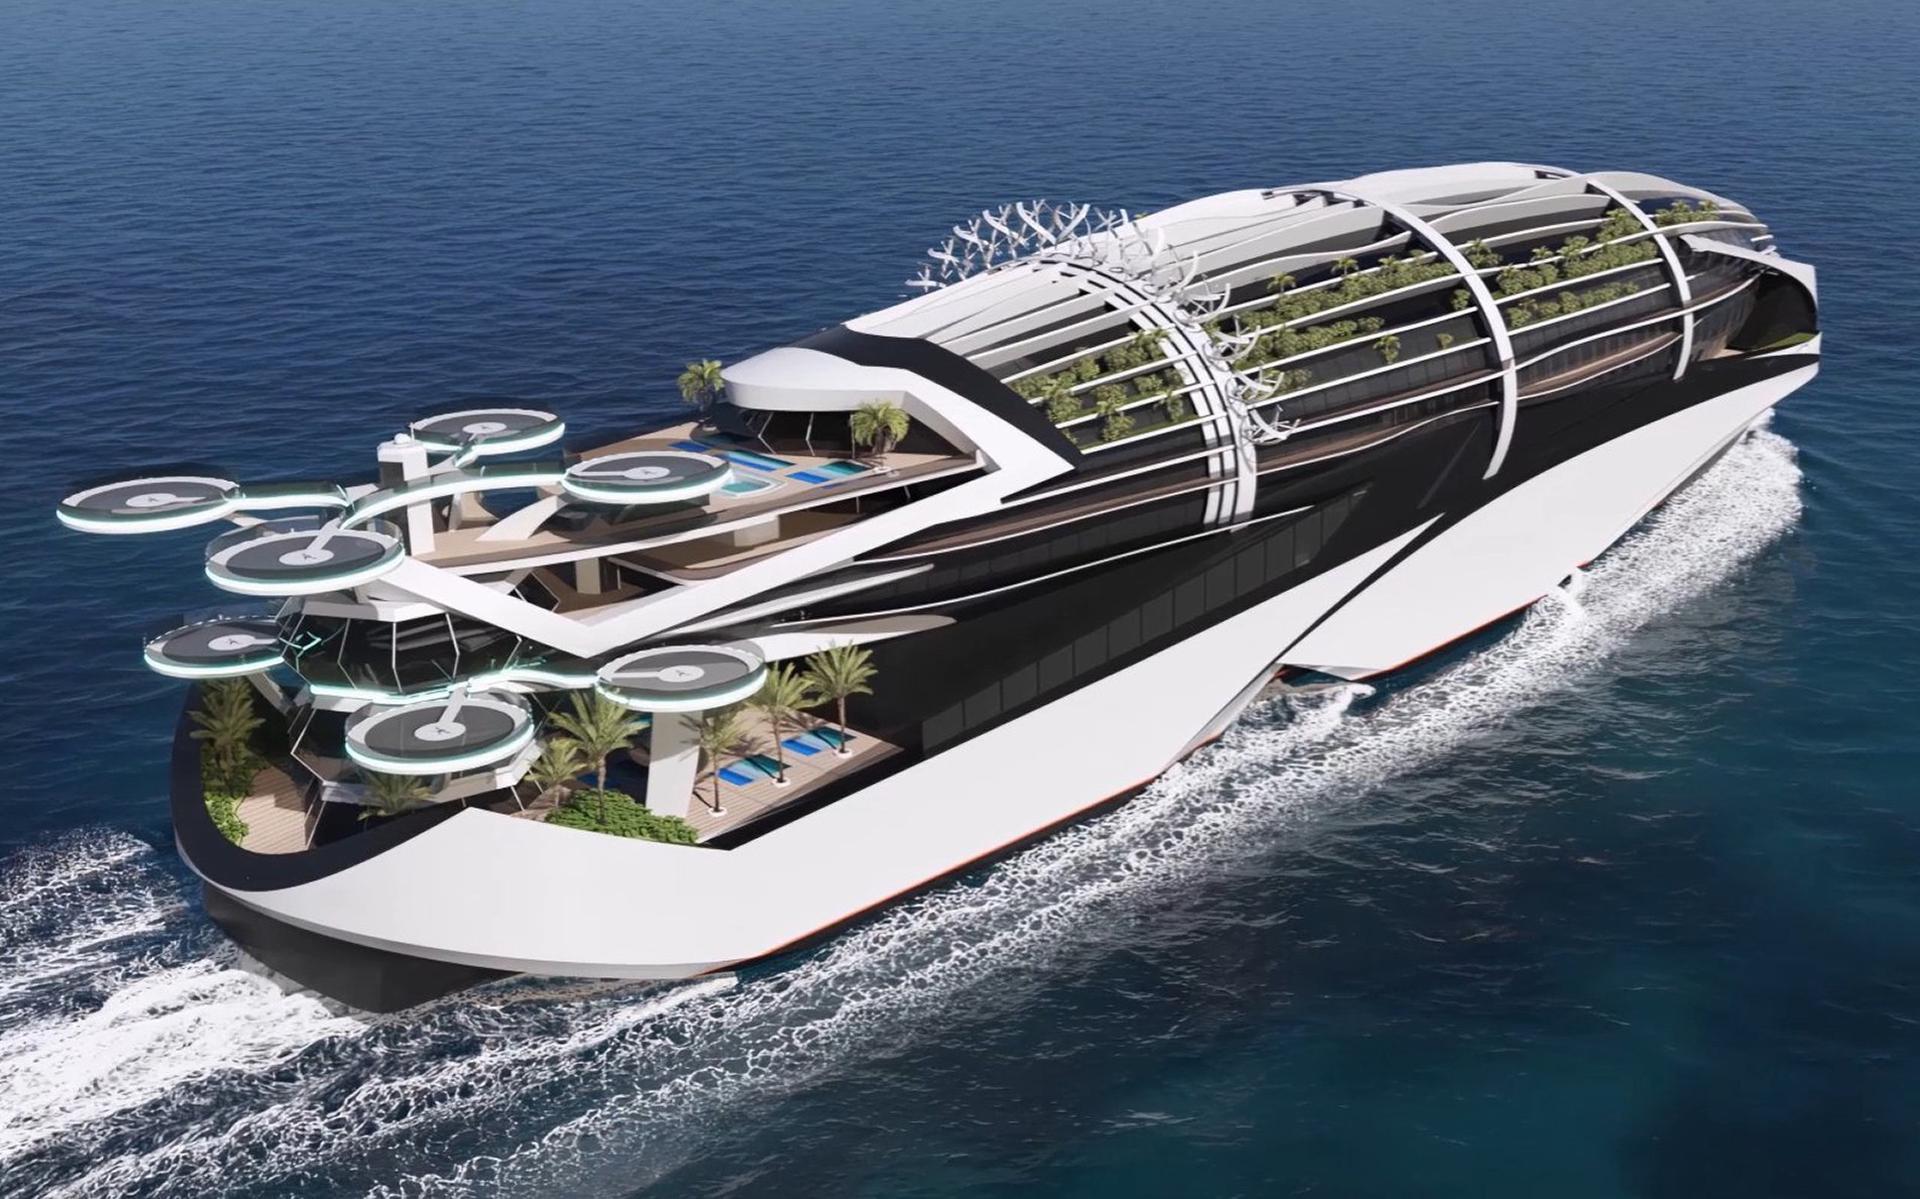 Het cruiseschip van de toekomst, zoals ze dat op de Meyer werf in gedachten hebben.